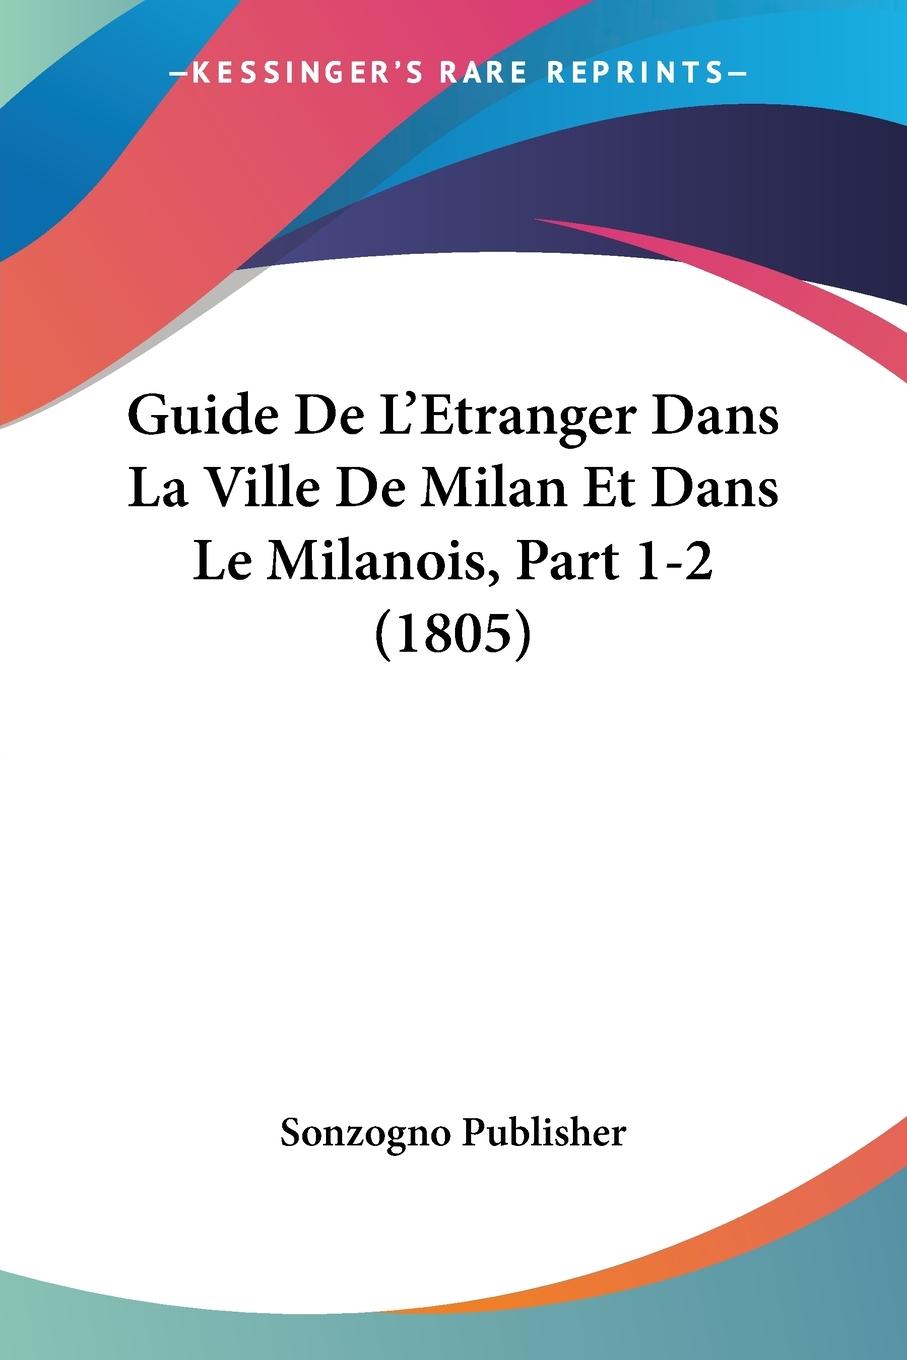 Guide De L Etranger Dans La Ville De Milan Et Dans Le Milanois, Part 1-2 (1805) - Sonzogno Publisher